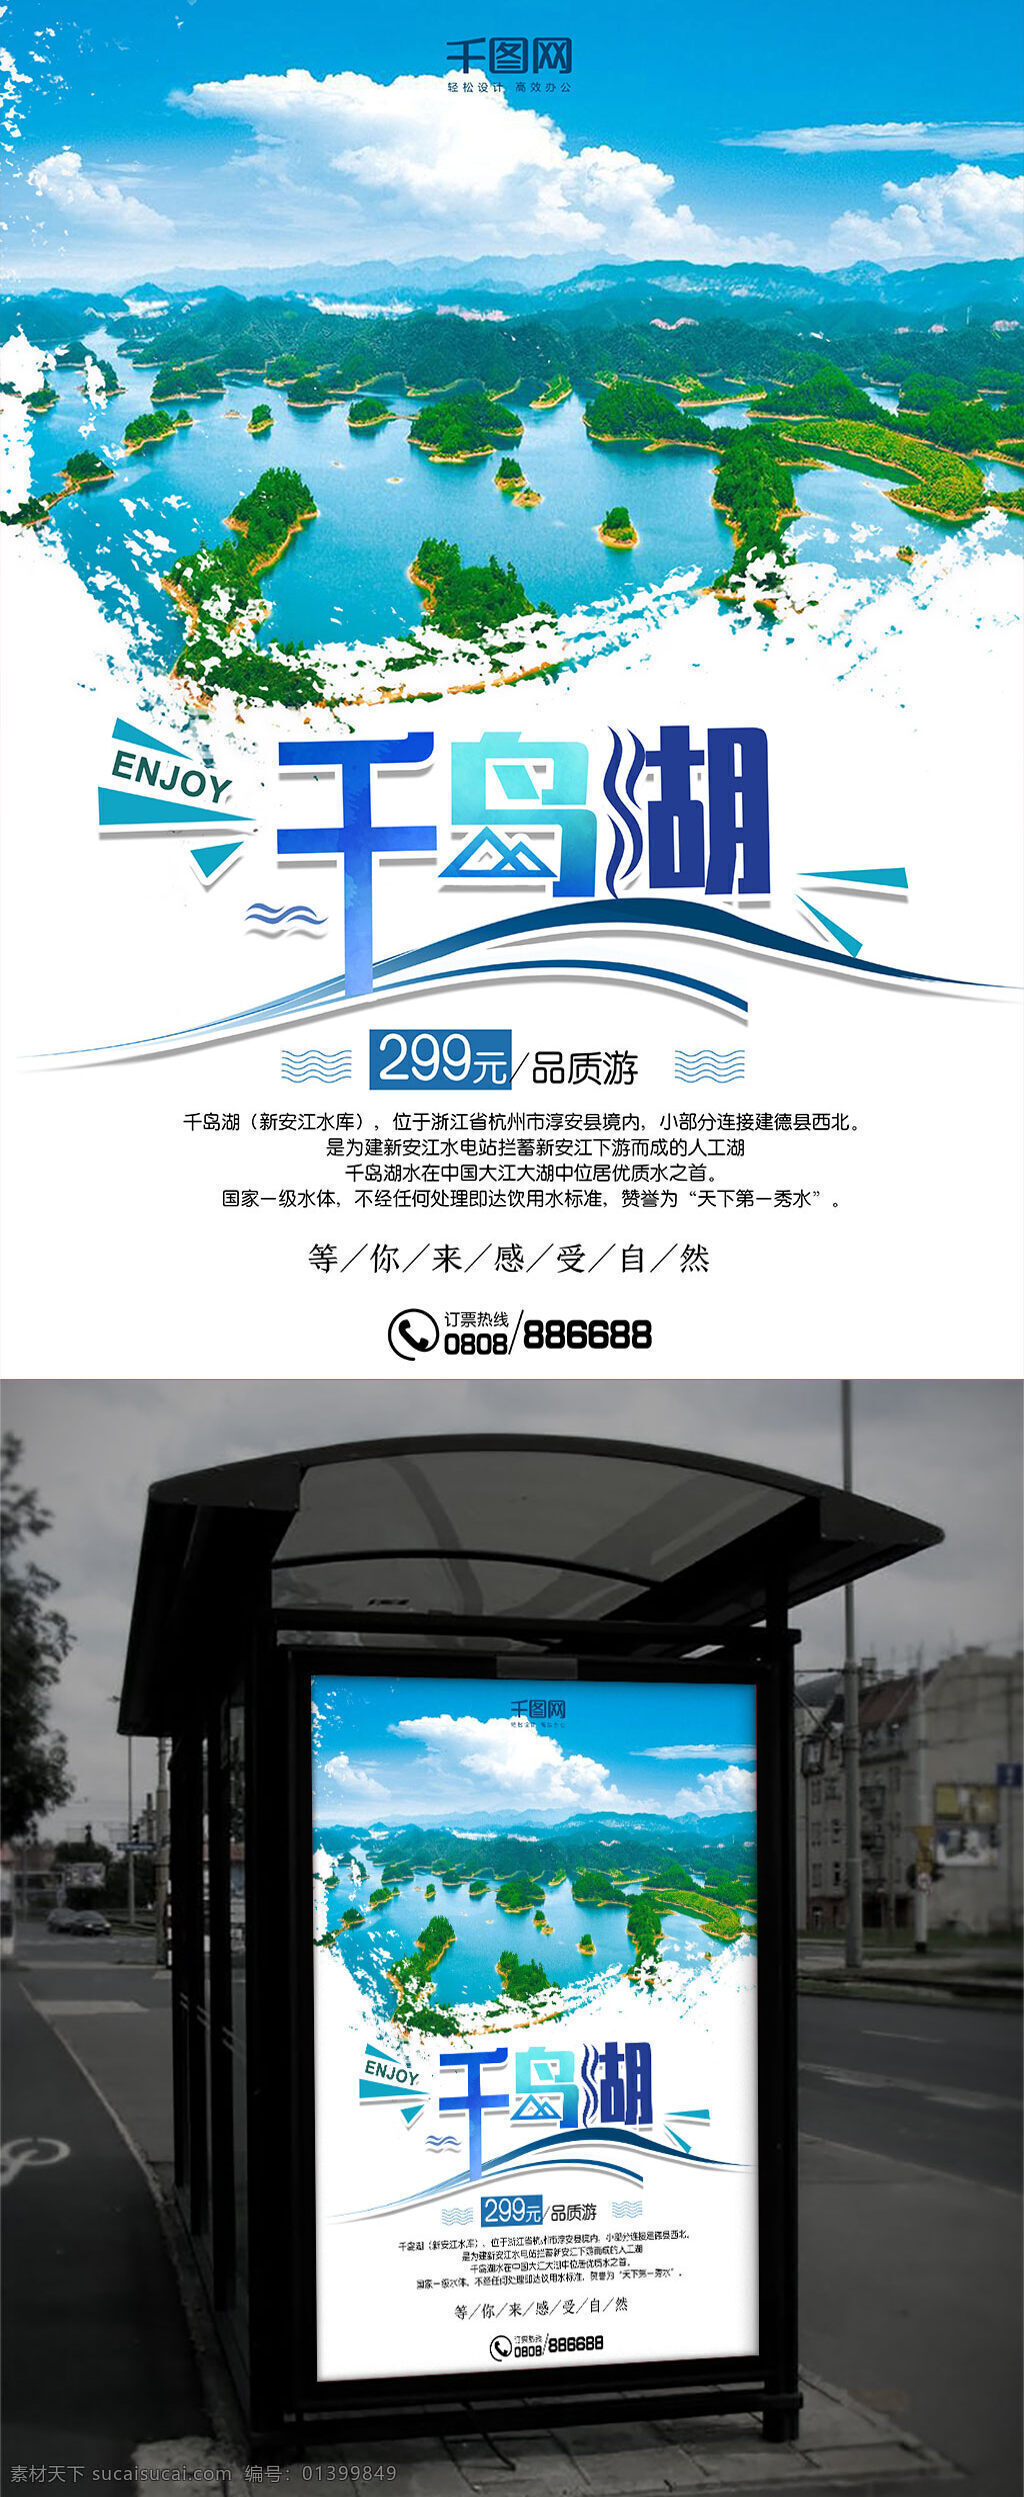 千岛湖 旅游 海报 旅游海报 风景 山水 岛屿 蓝色 品质游 自然 感受 享受 杭州 人工湖 优质水 美誉 天下 第一 秀水